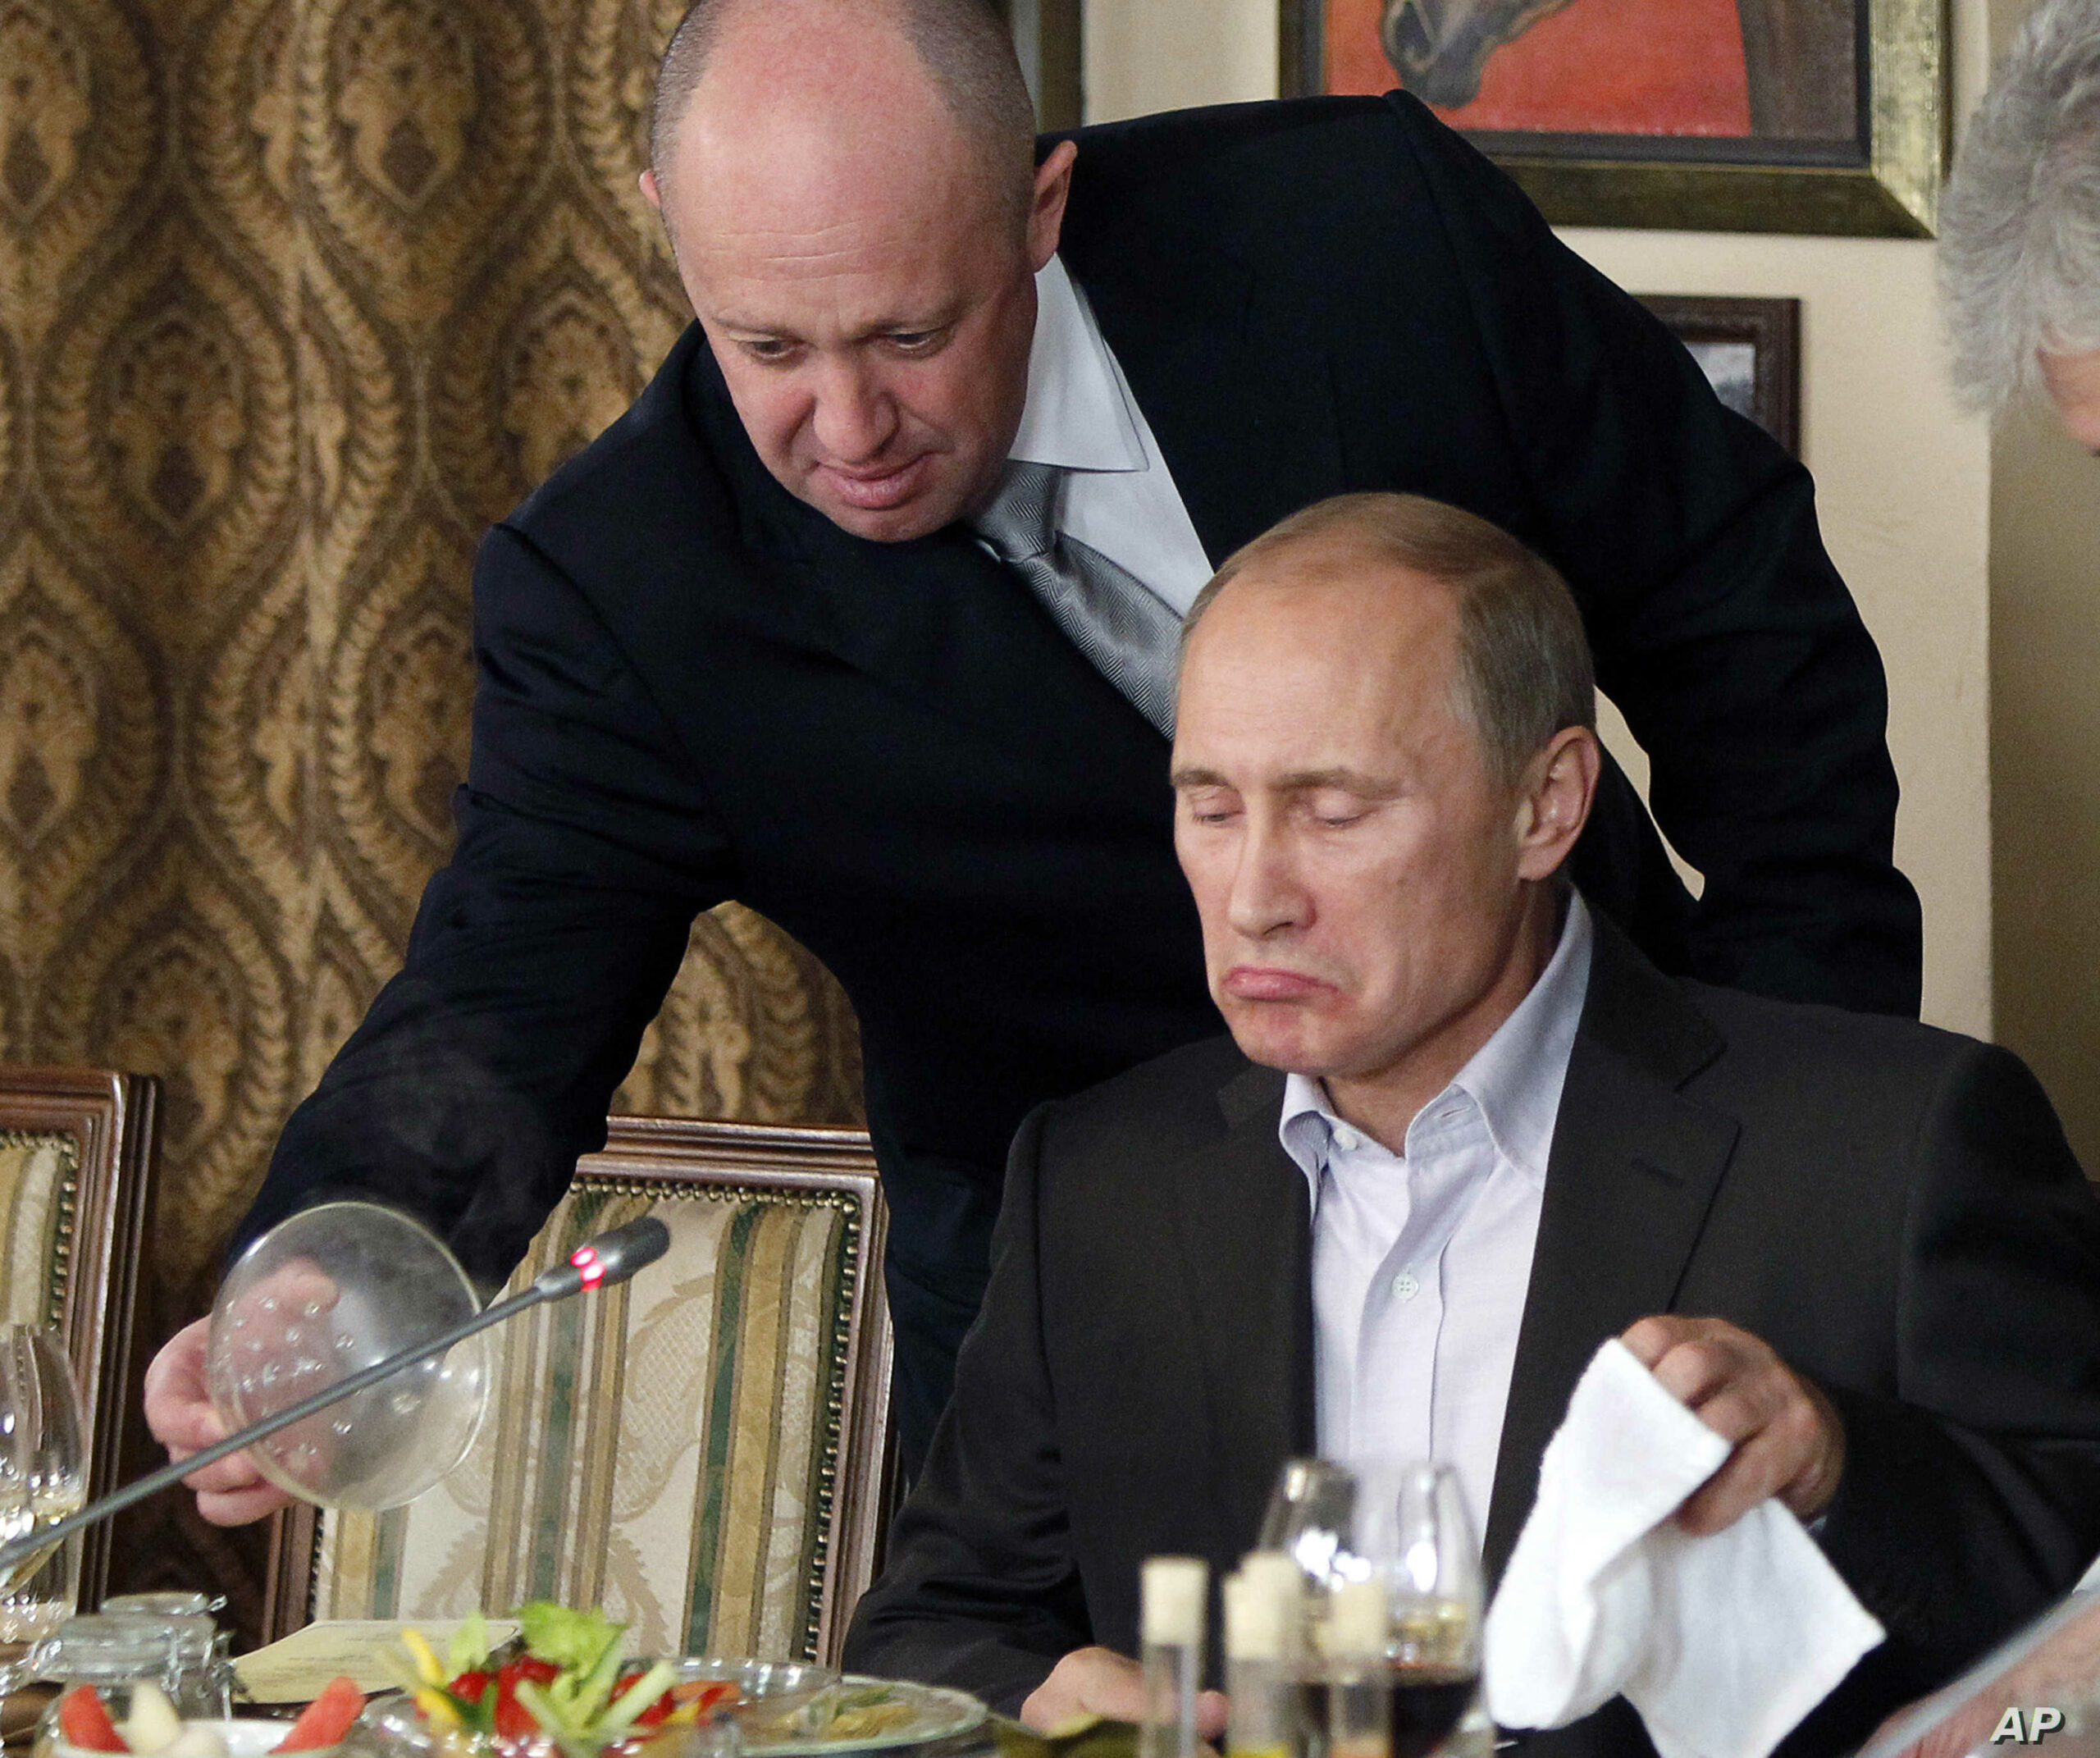 يفغيني بريغوزين، إلى اليسار، يقدم الطعام للرئيس الروسي فلاديمير بوتين - إنترنت